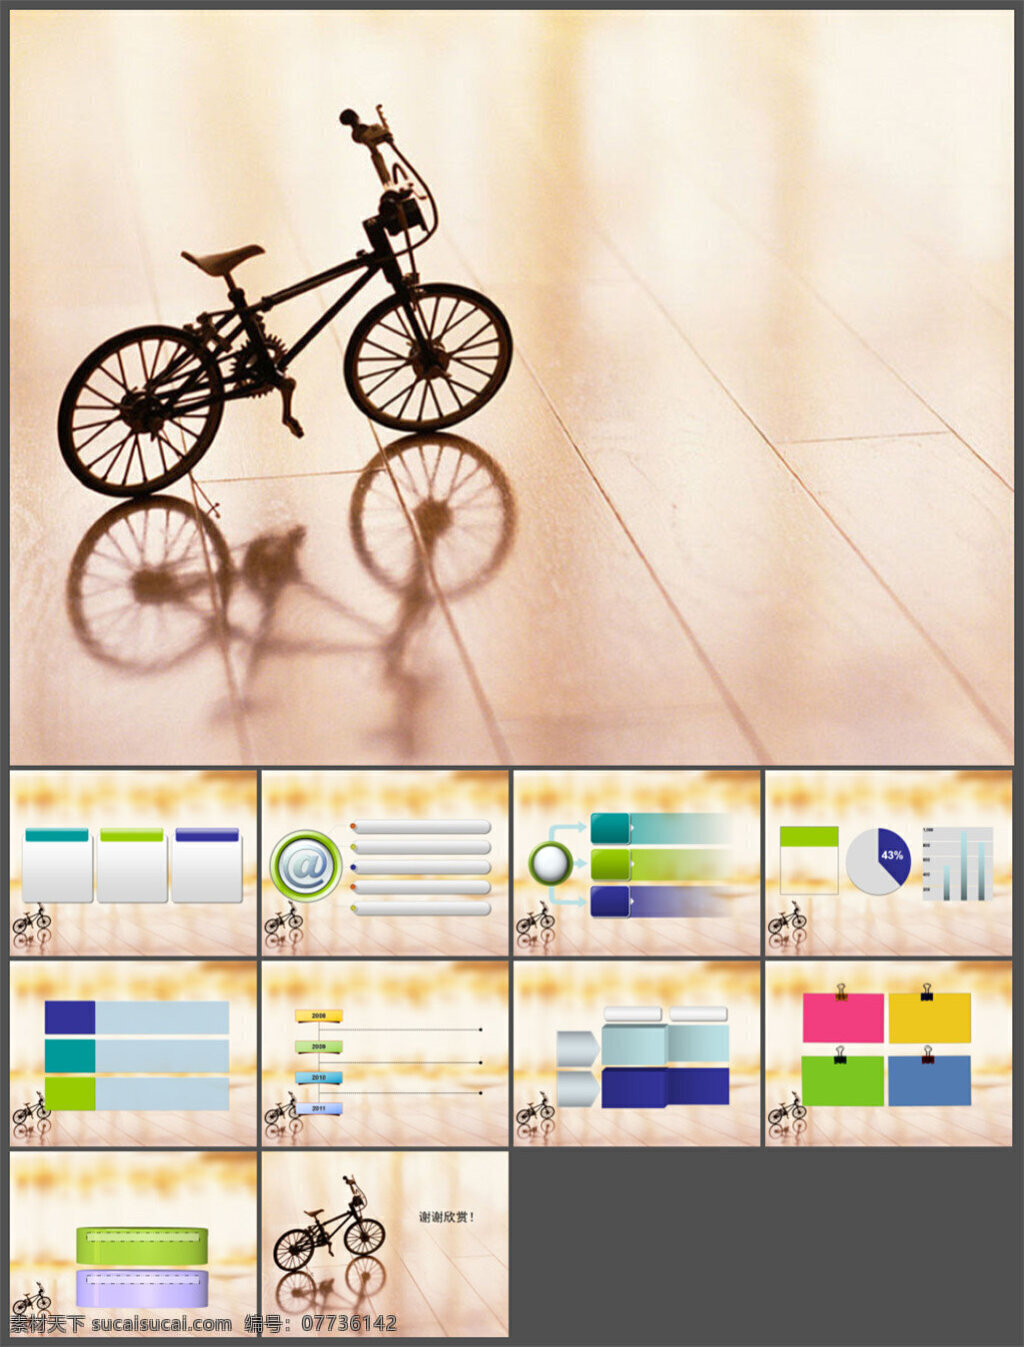 单车 精美 背景 模板 图表 制作 多媒体 企业 动态 模版素材下载 ppt素材 pptx 白色